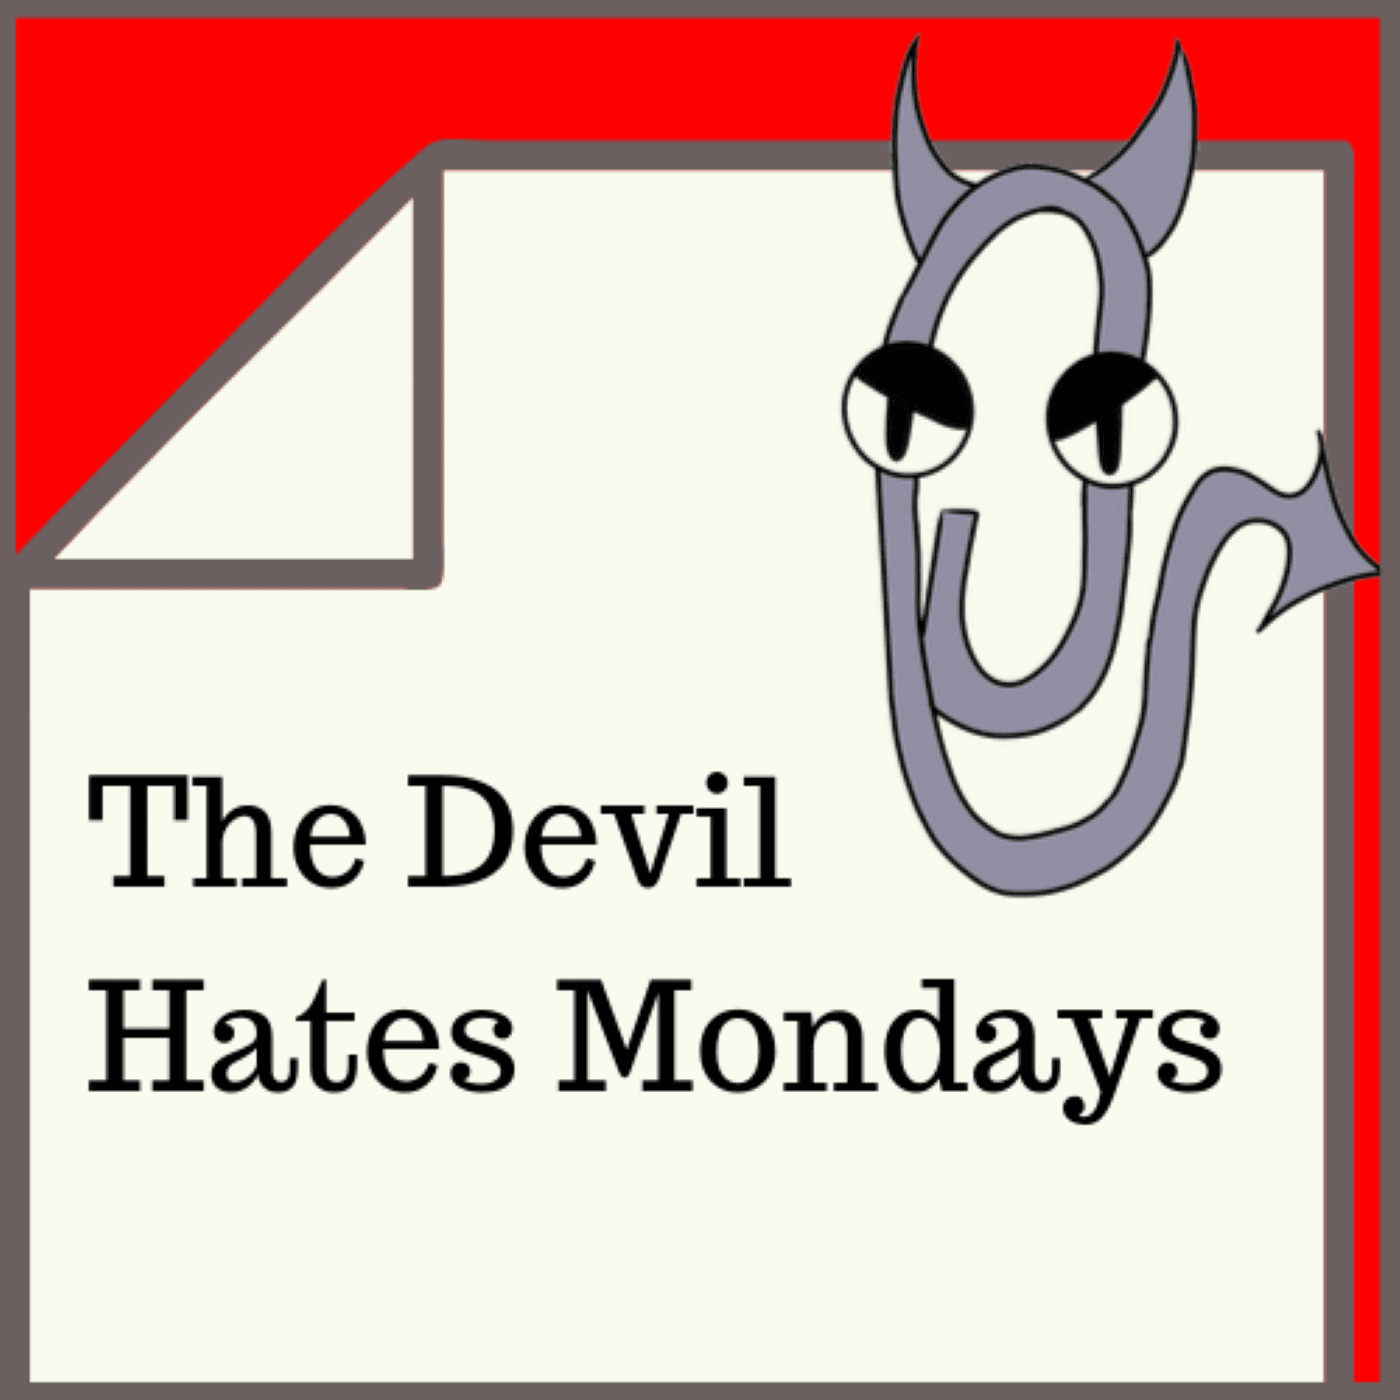 The Devil Hates Mondays